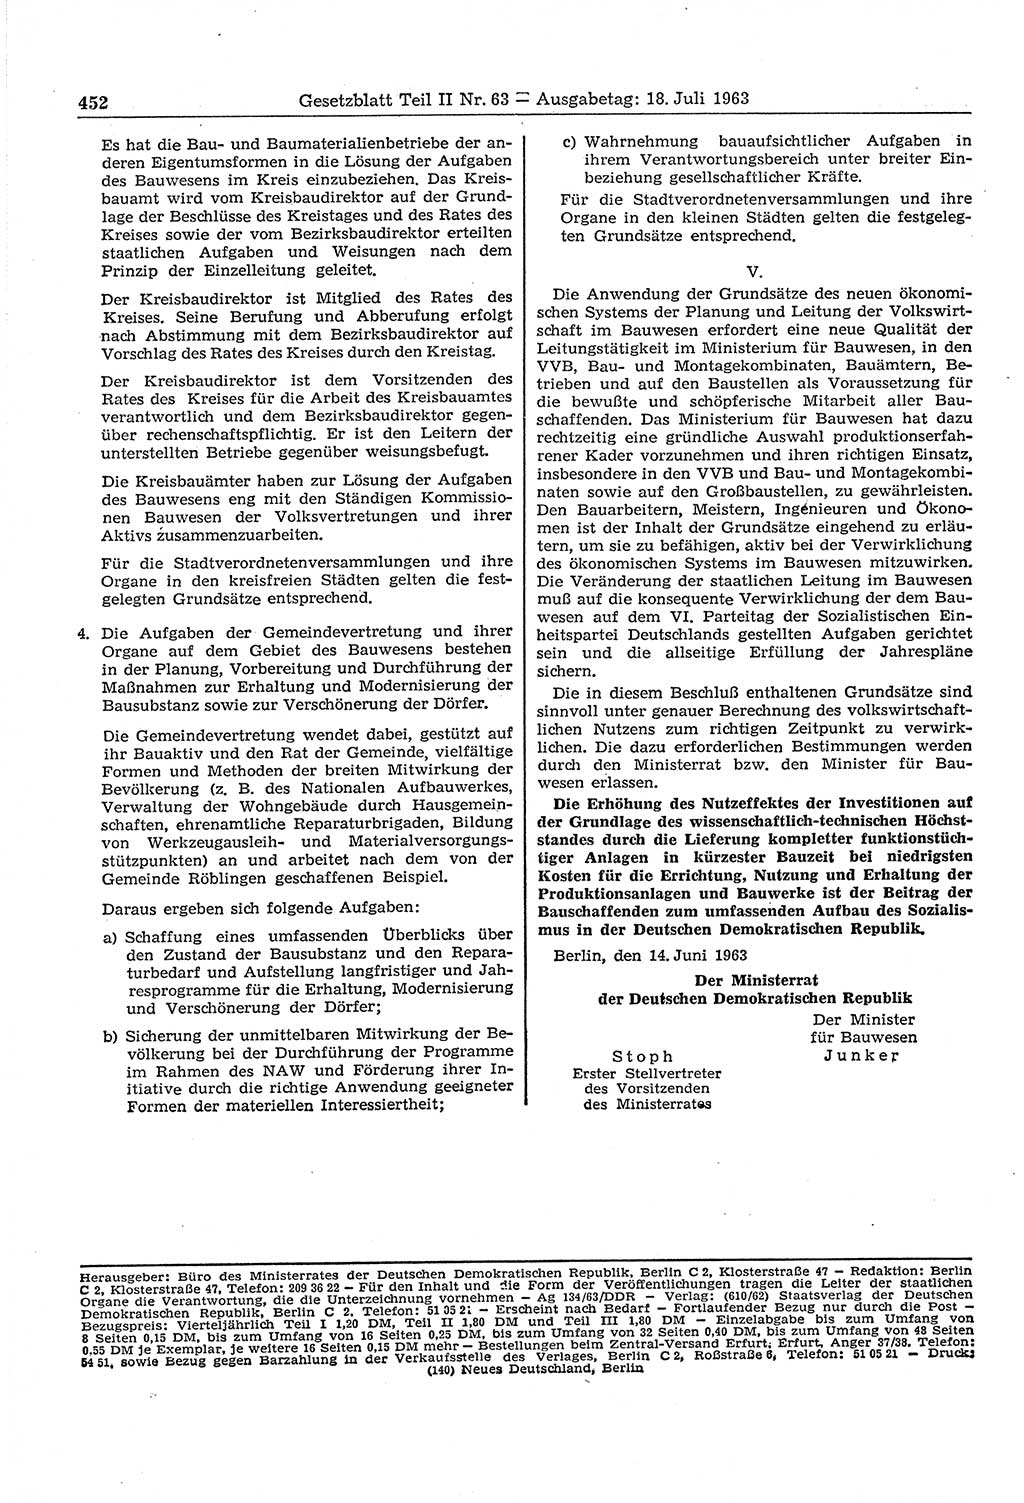 Gesetzblatt (GBl.) der Deutschen Demokratischen Republik (DDR) Teil ⅠⅠ 1963, Seite 452 (GBl. DDR ⅠⅠ 1963, S. 452)